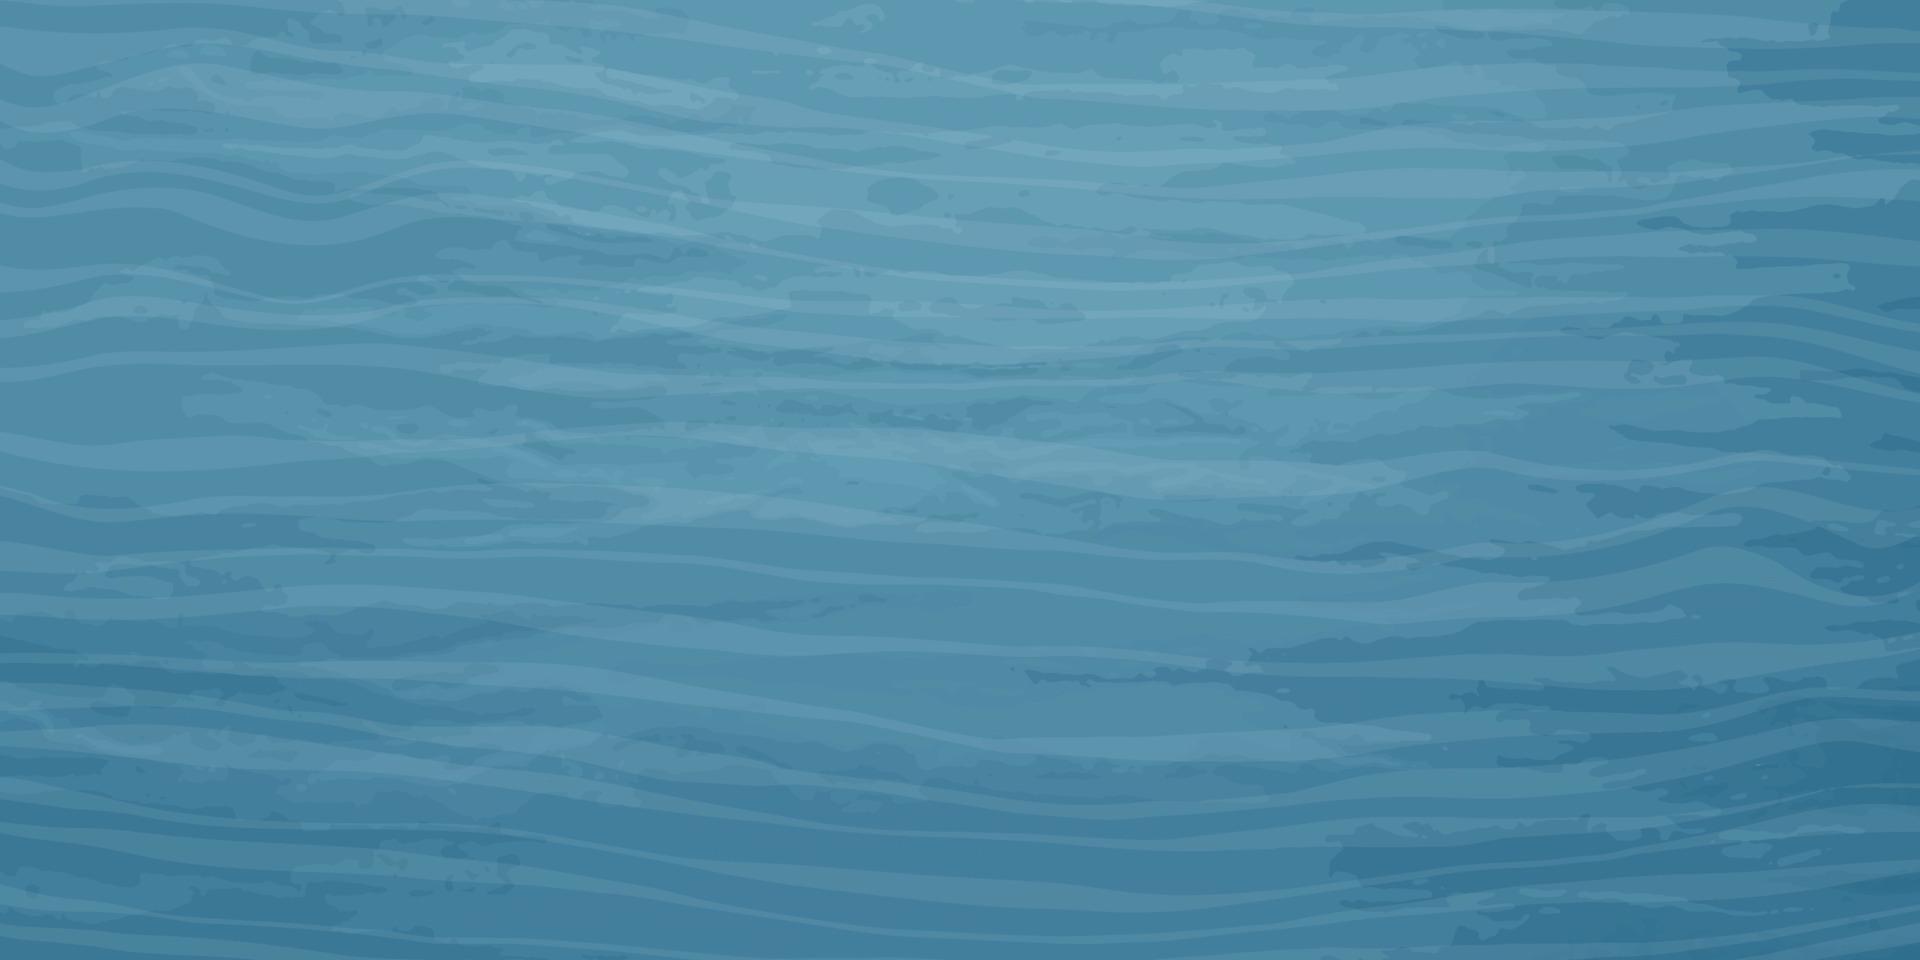 elegant achtergrond met een blauw Golf textuur. abstract sjabloon met verschillend tinten van blauw en turkoois met gemengd vormen. vector illustratie.